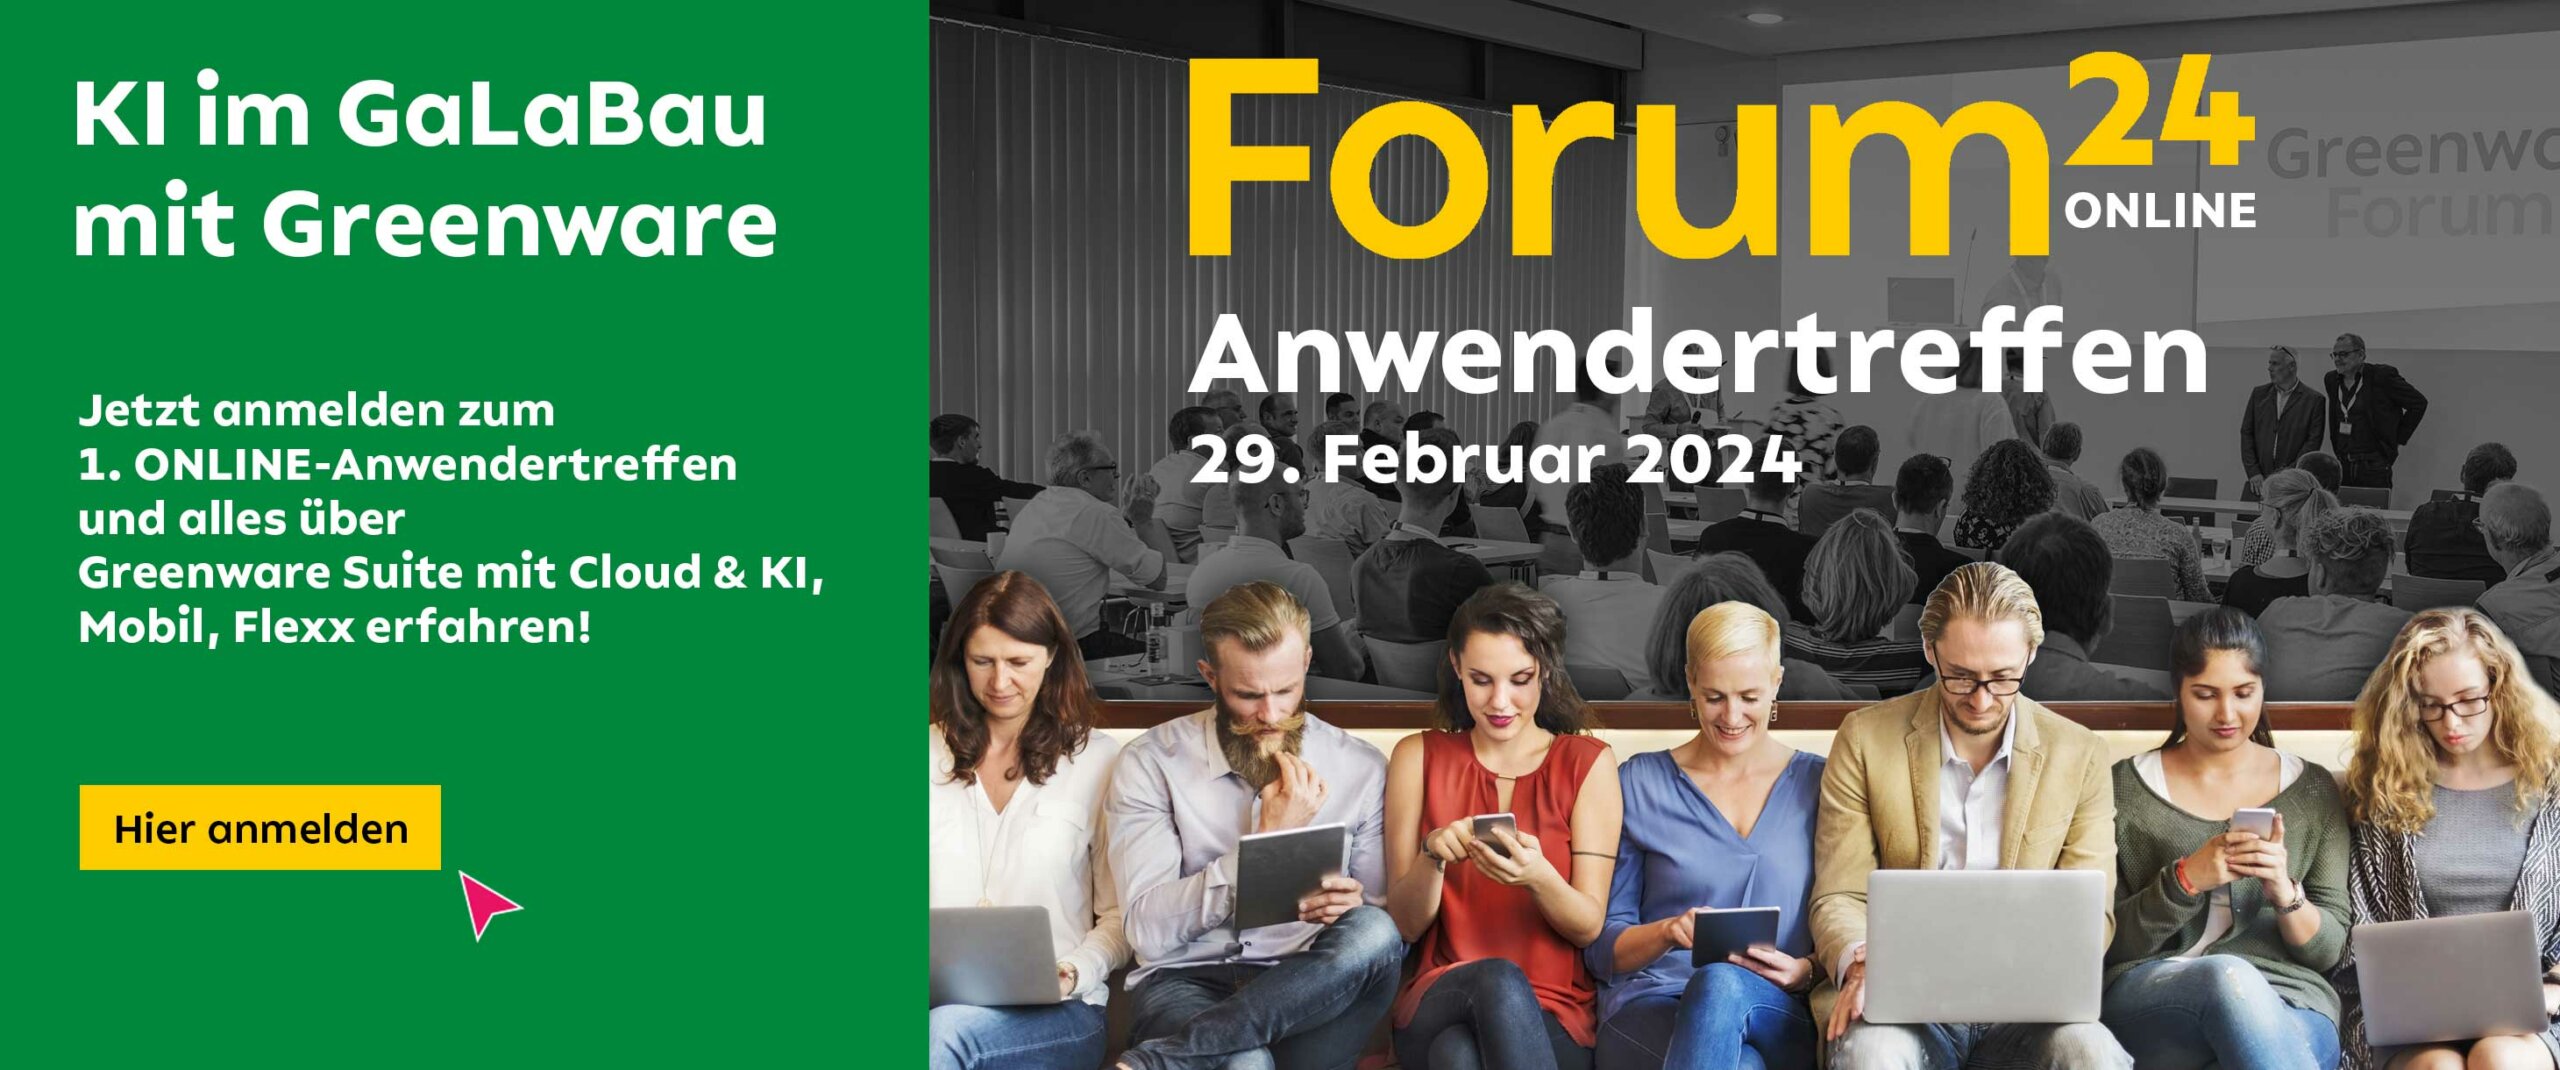 Greenware Online Anwendertreffen Forum24 - 20.02.24